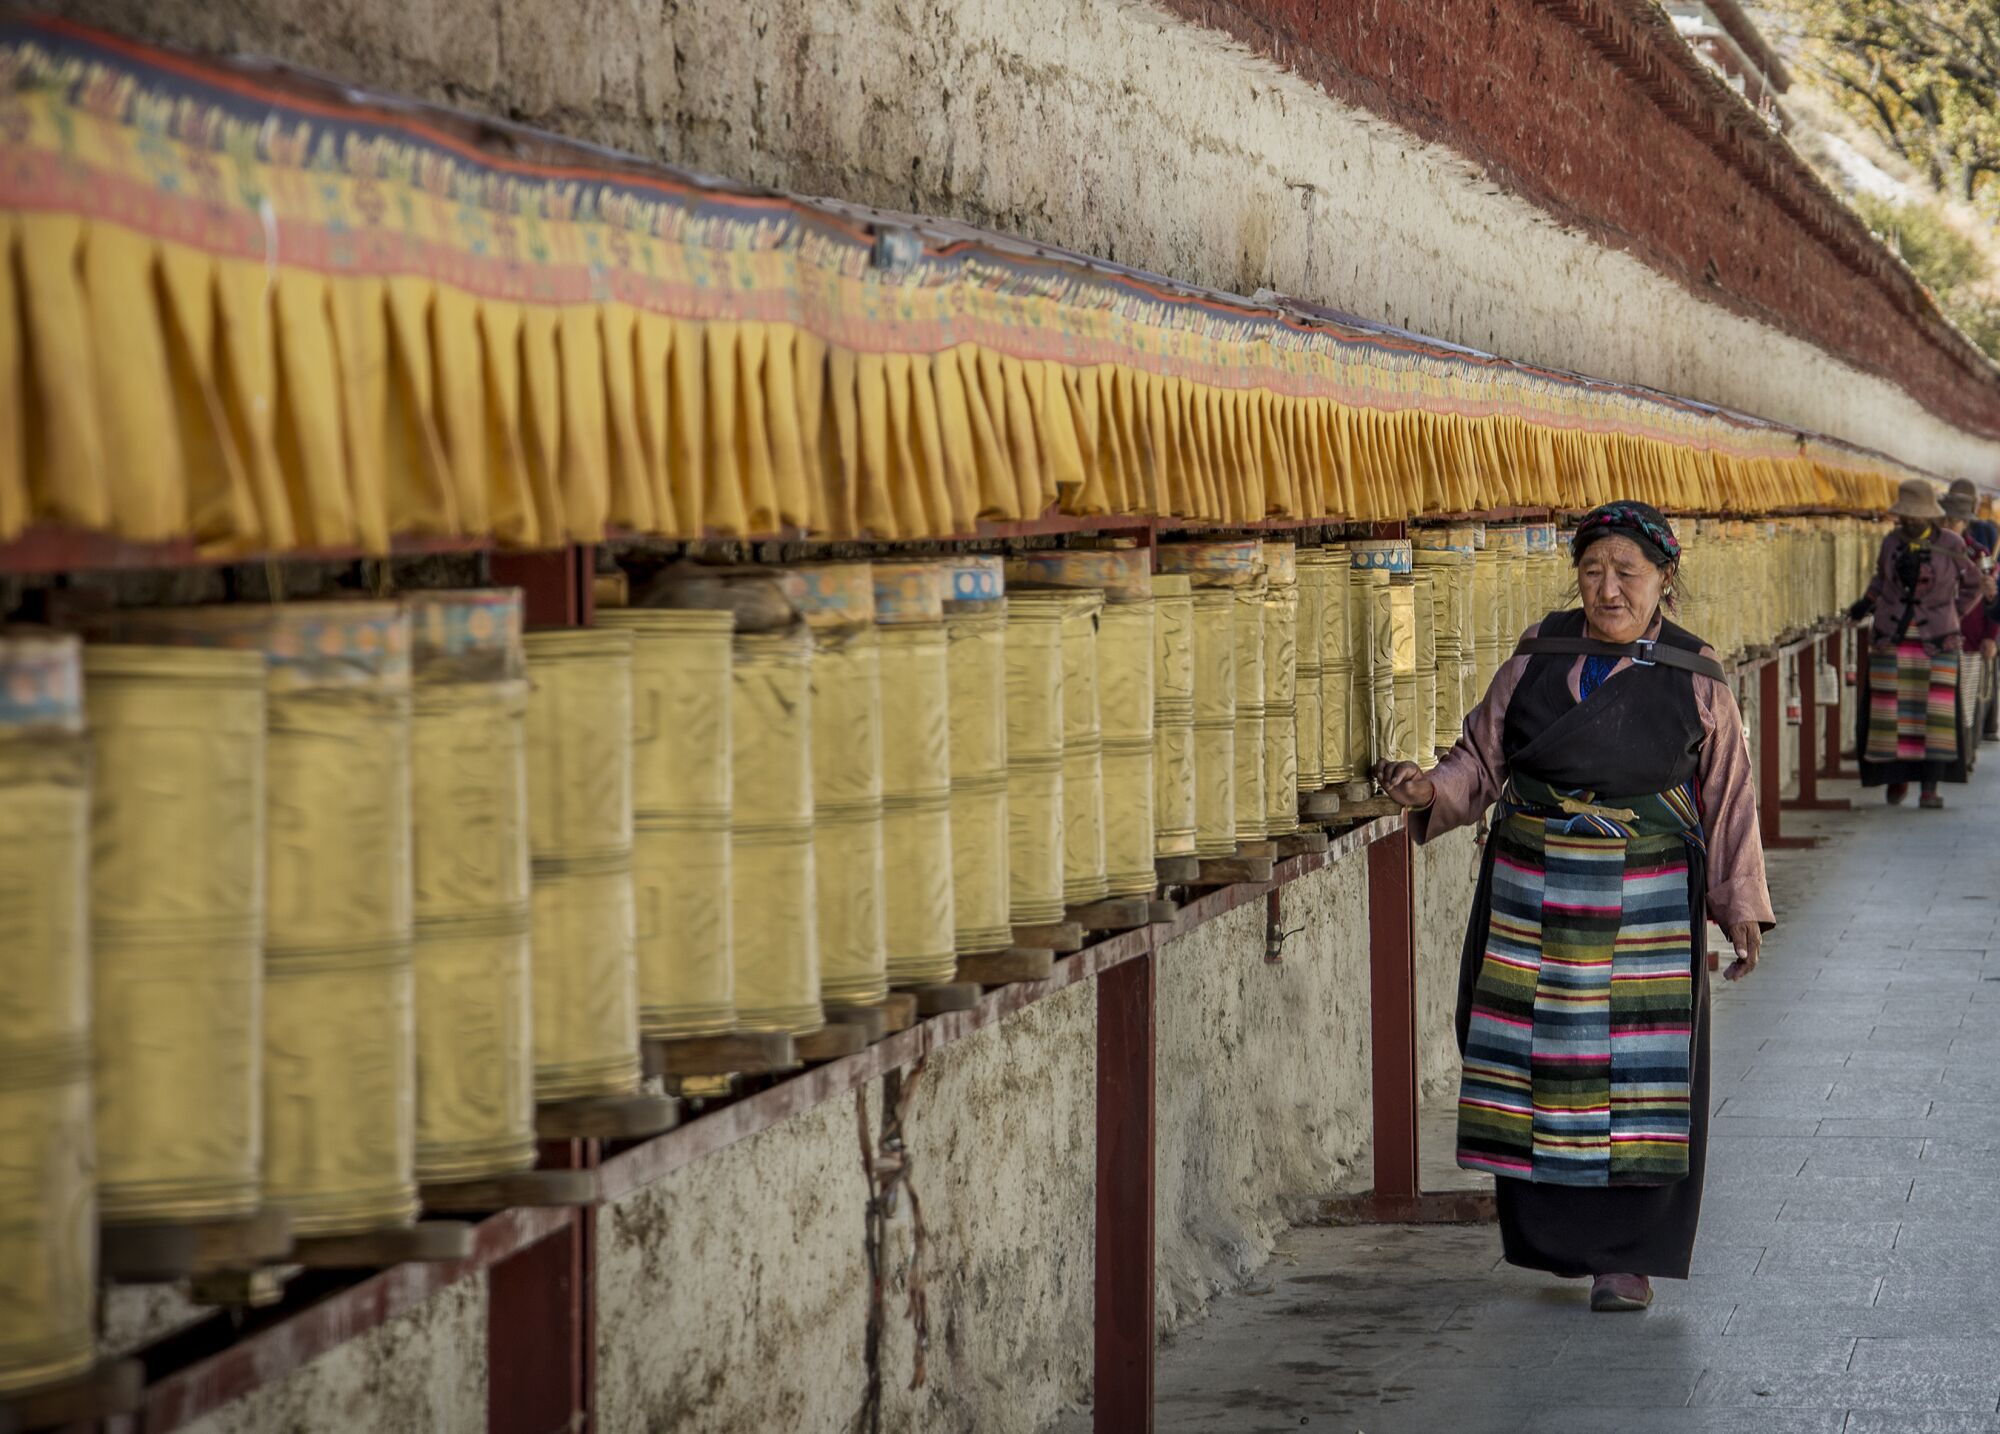 Prayer wheels at Potala Palace in Tibet.